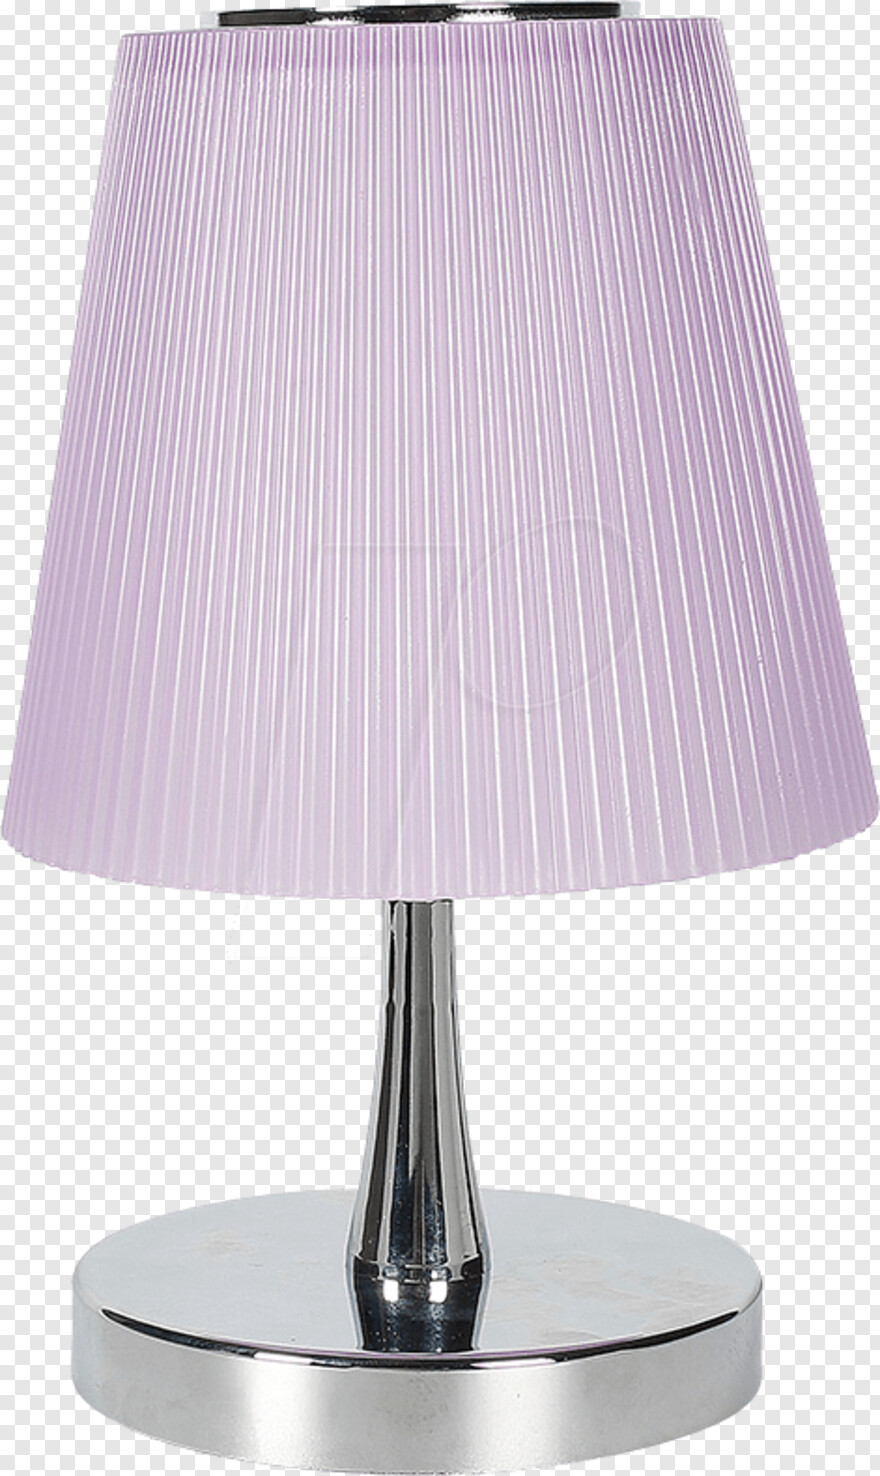 hanging-lamp # 335704